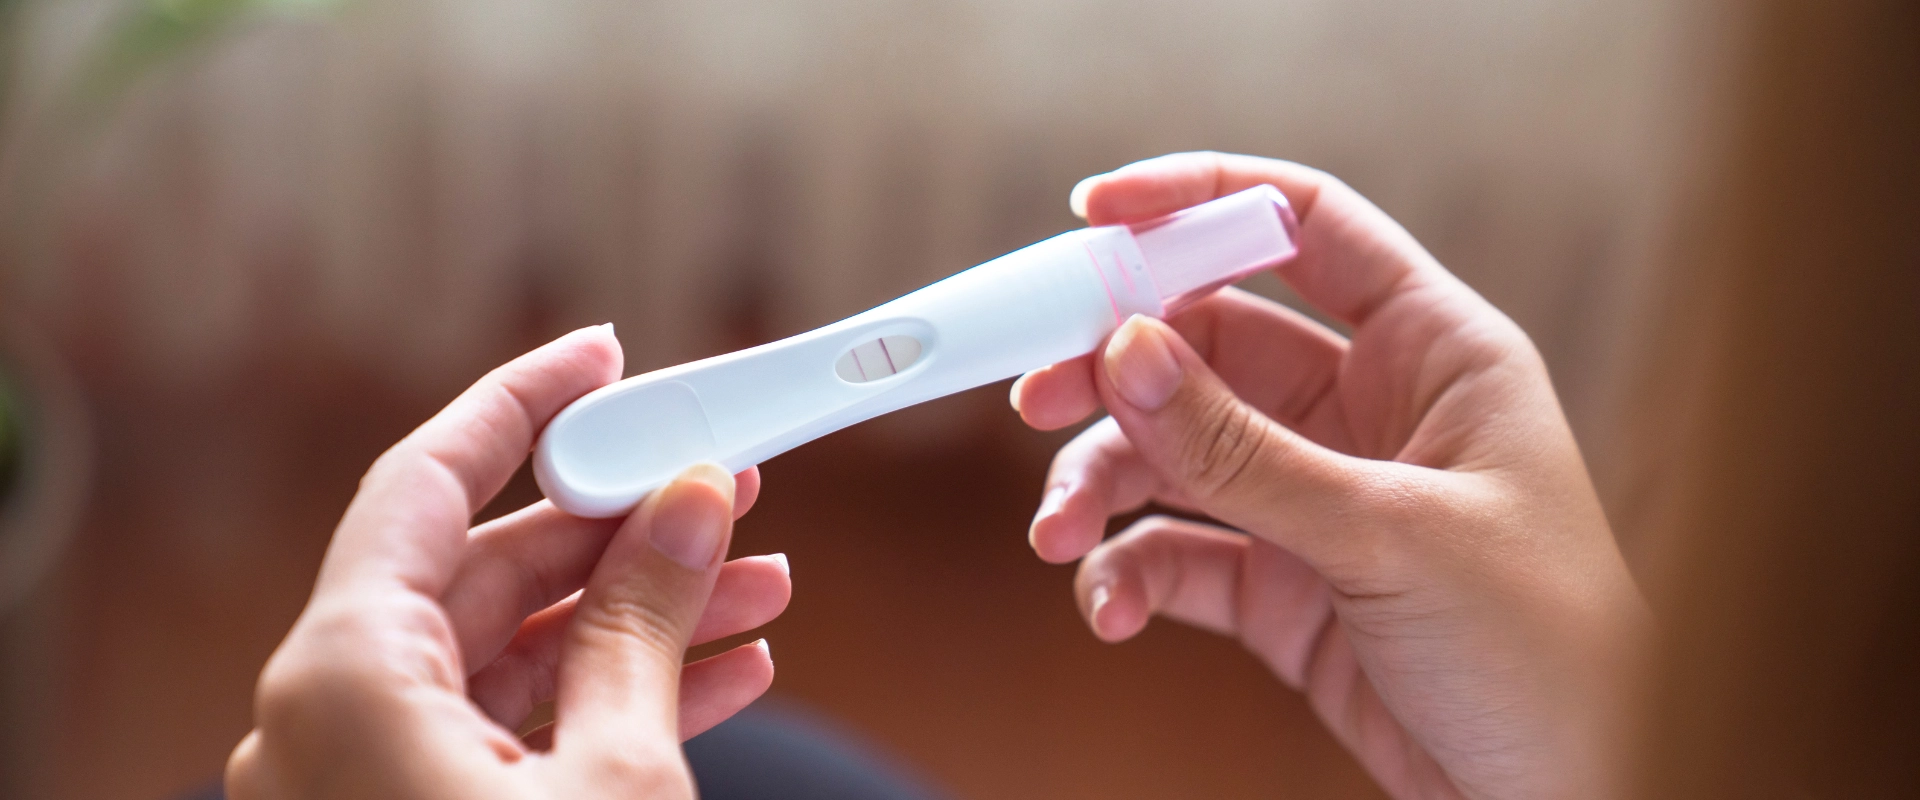 Test di gravidanza: quando farlo e come leggerlo